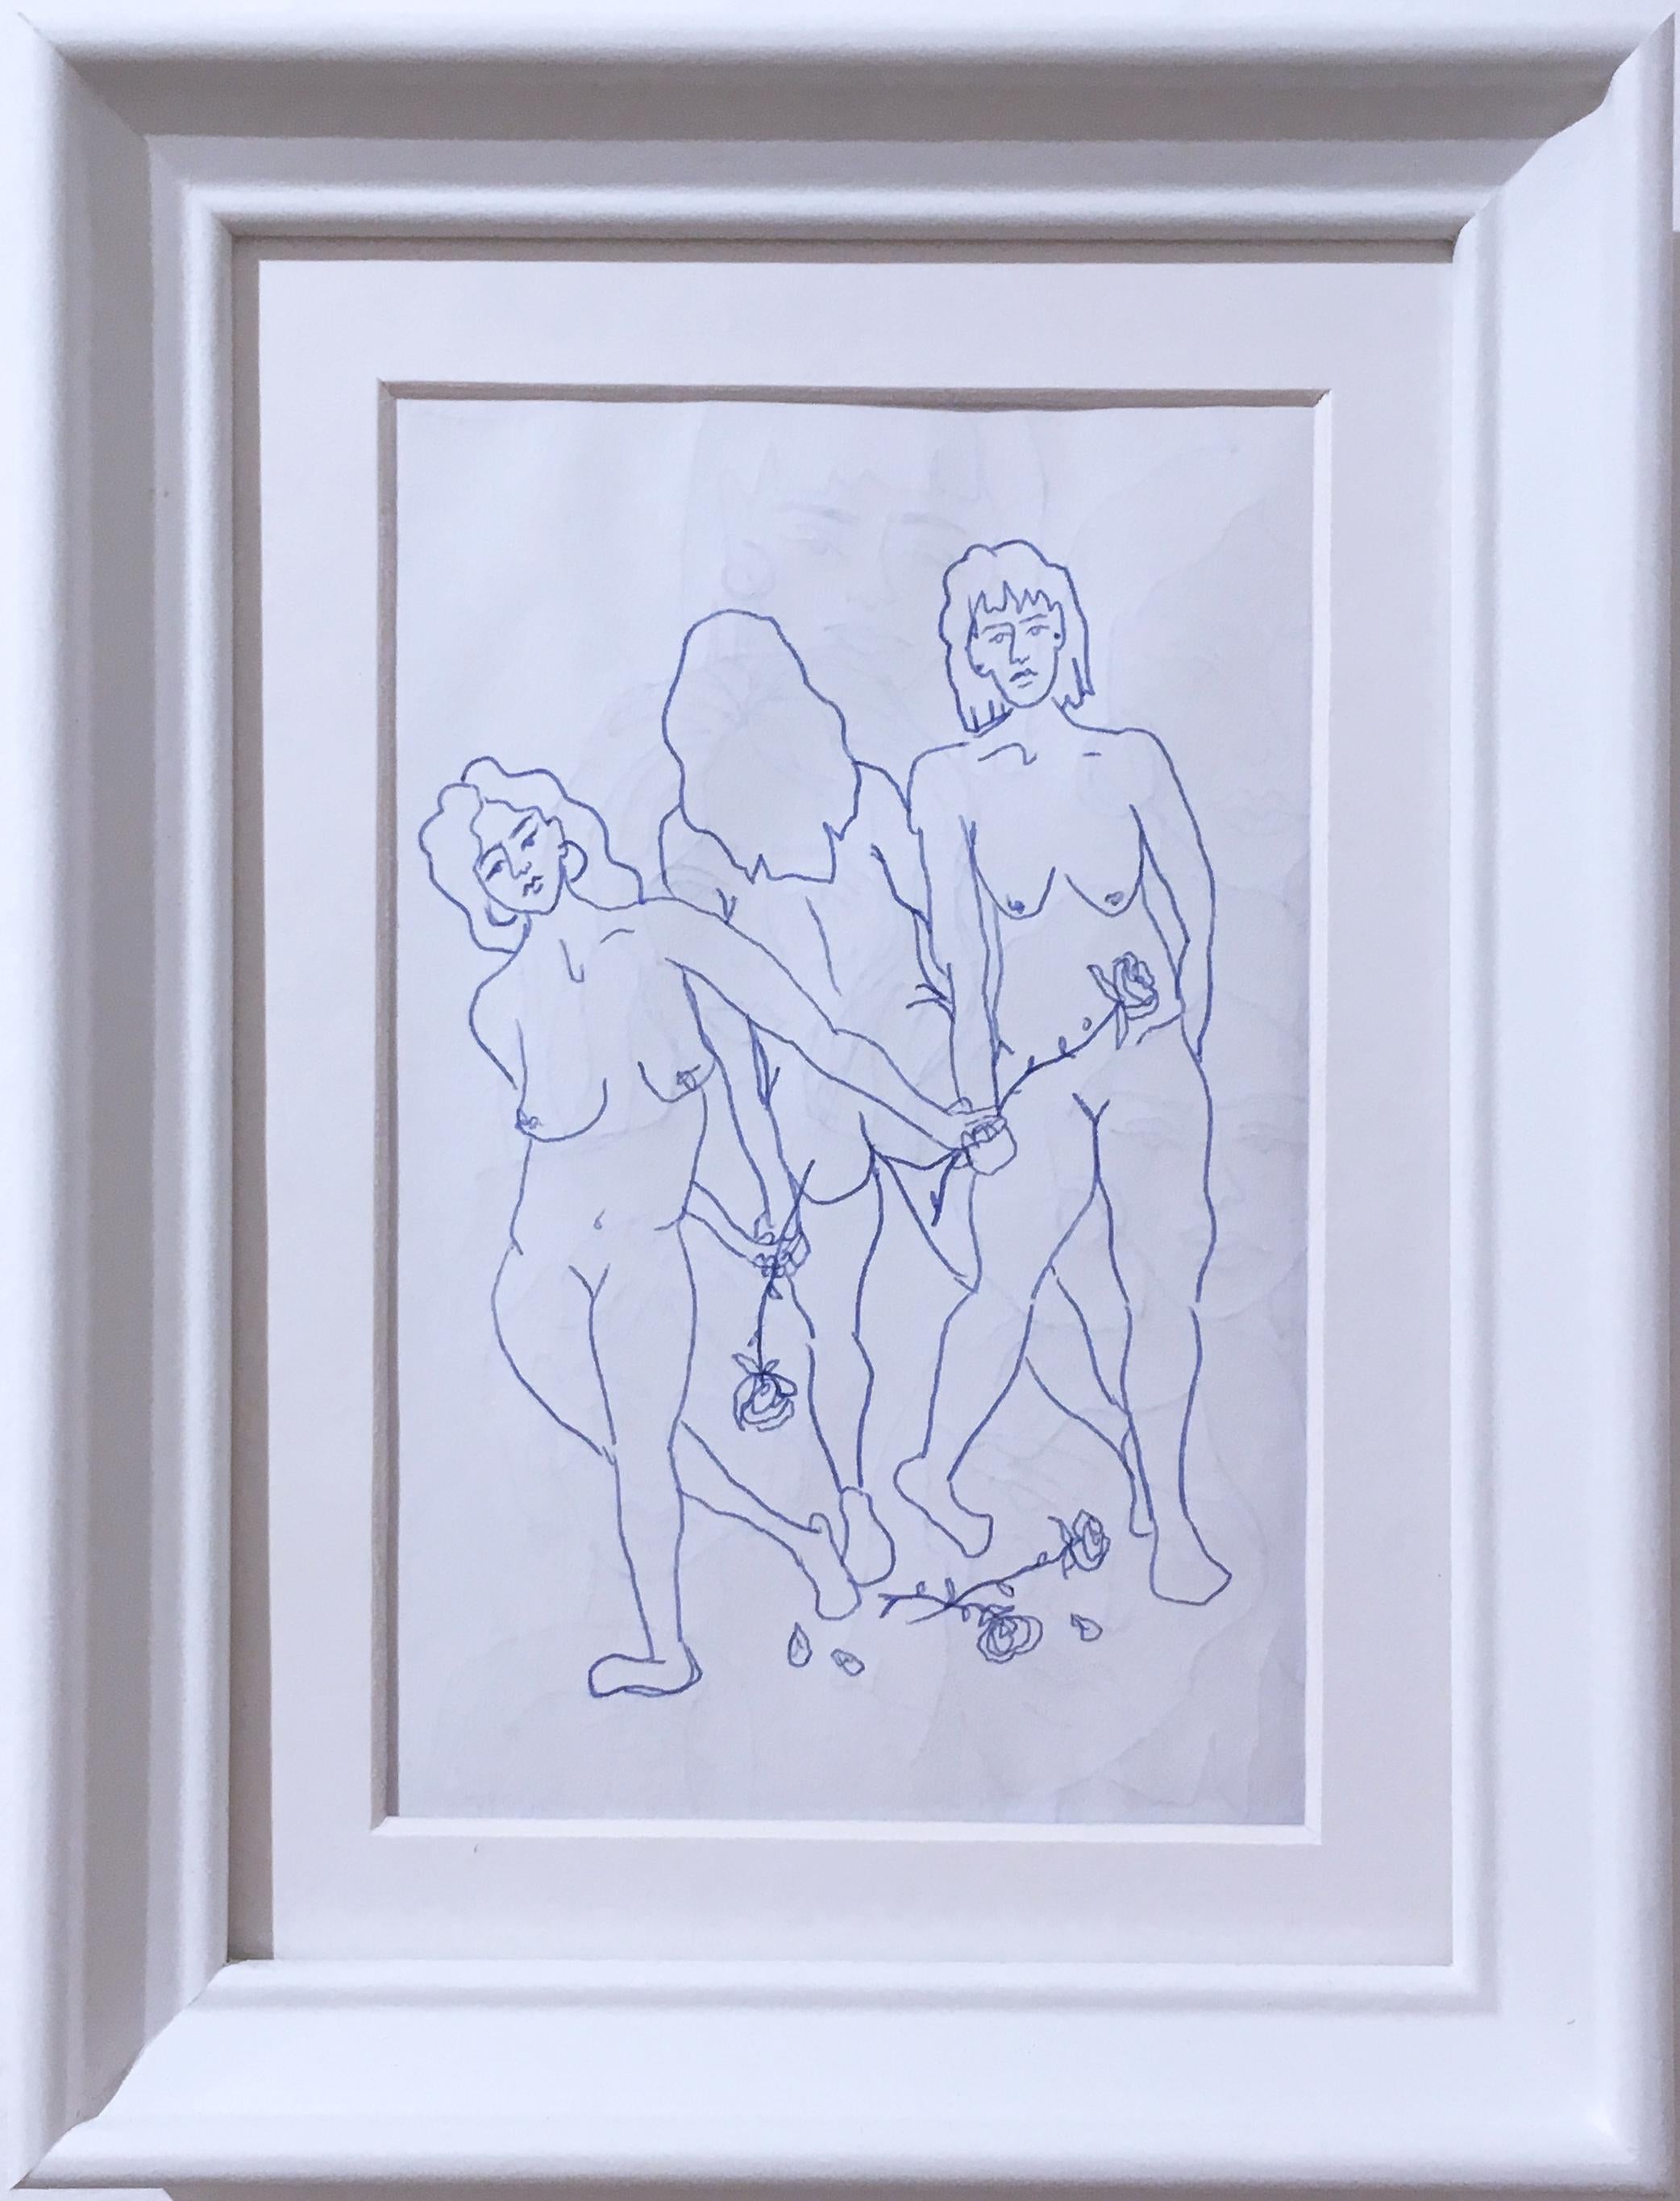 Blaue Akte VI, Tusche auf Papier, blau-weiße Zeichnung, figurative Studie, tanzende Frauen